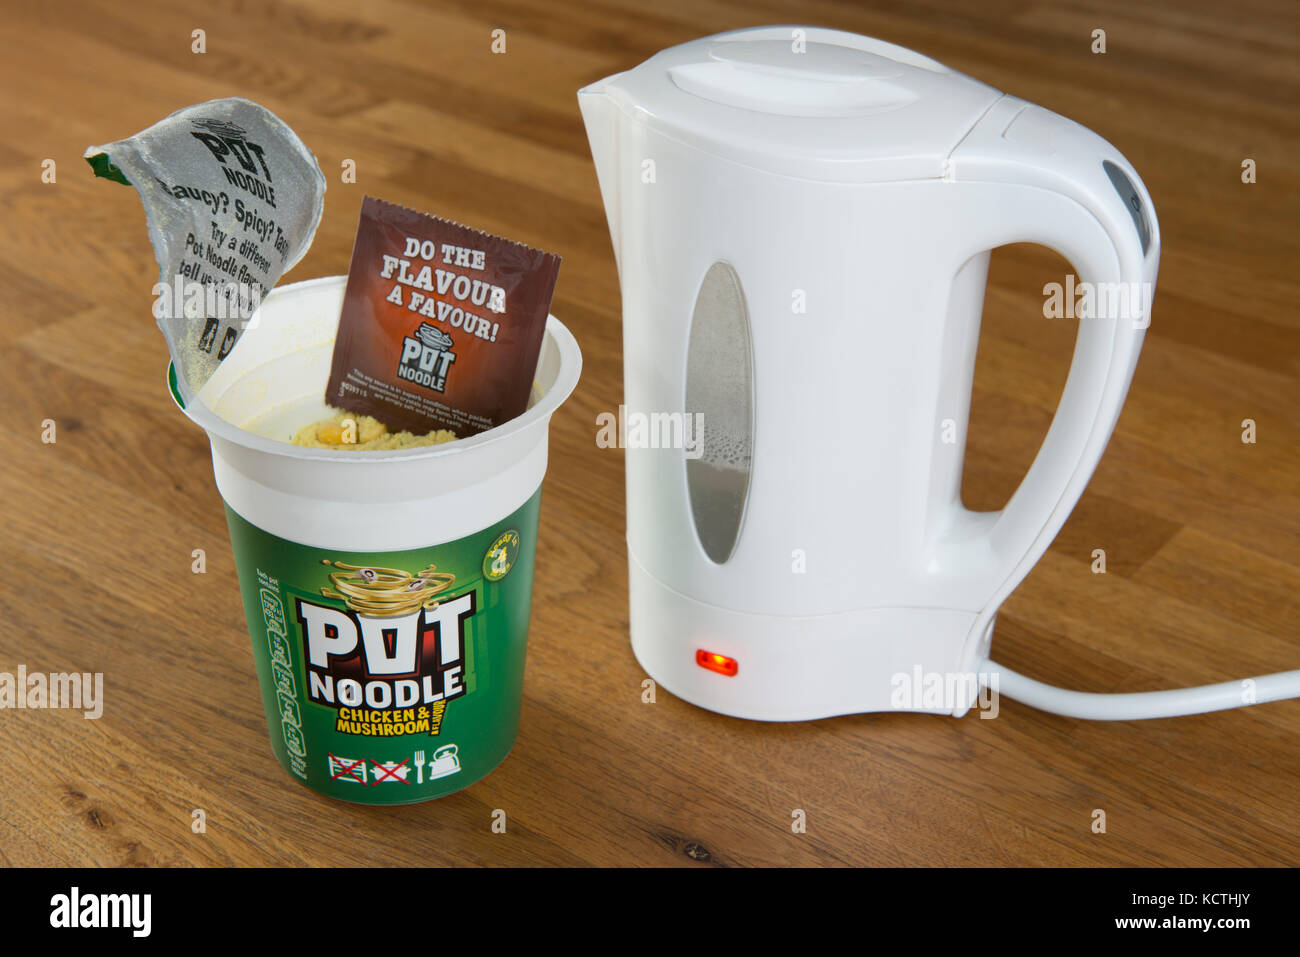 Un Unilever Pot Noodle (pollo e sapore di fungo) nel processo di essere preparati utilizzando acqua bollente da un bollitore (solo uso editoriale). Foto Stock